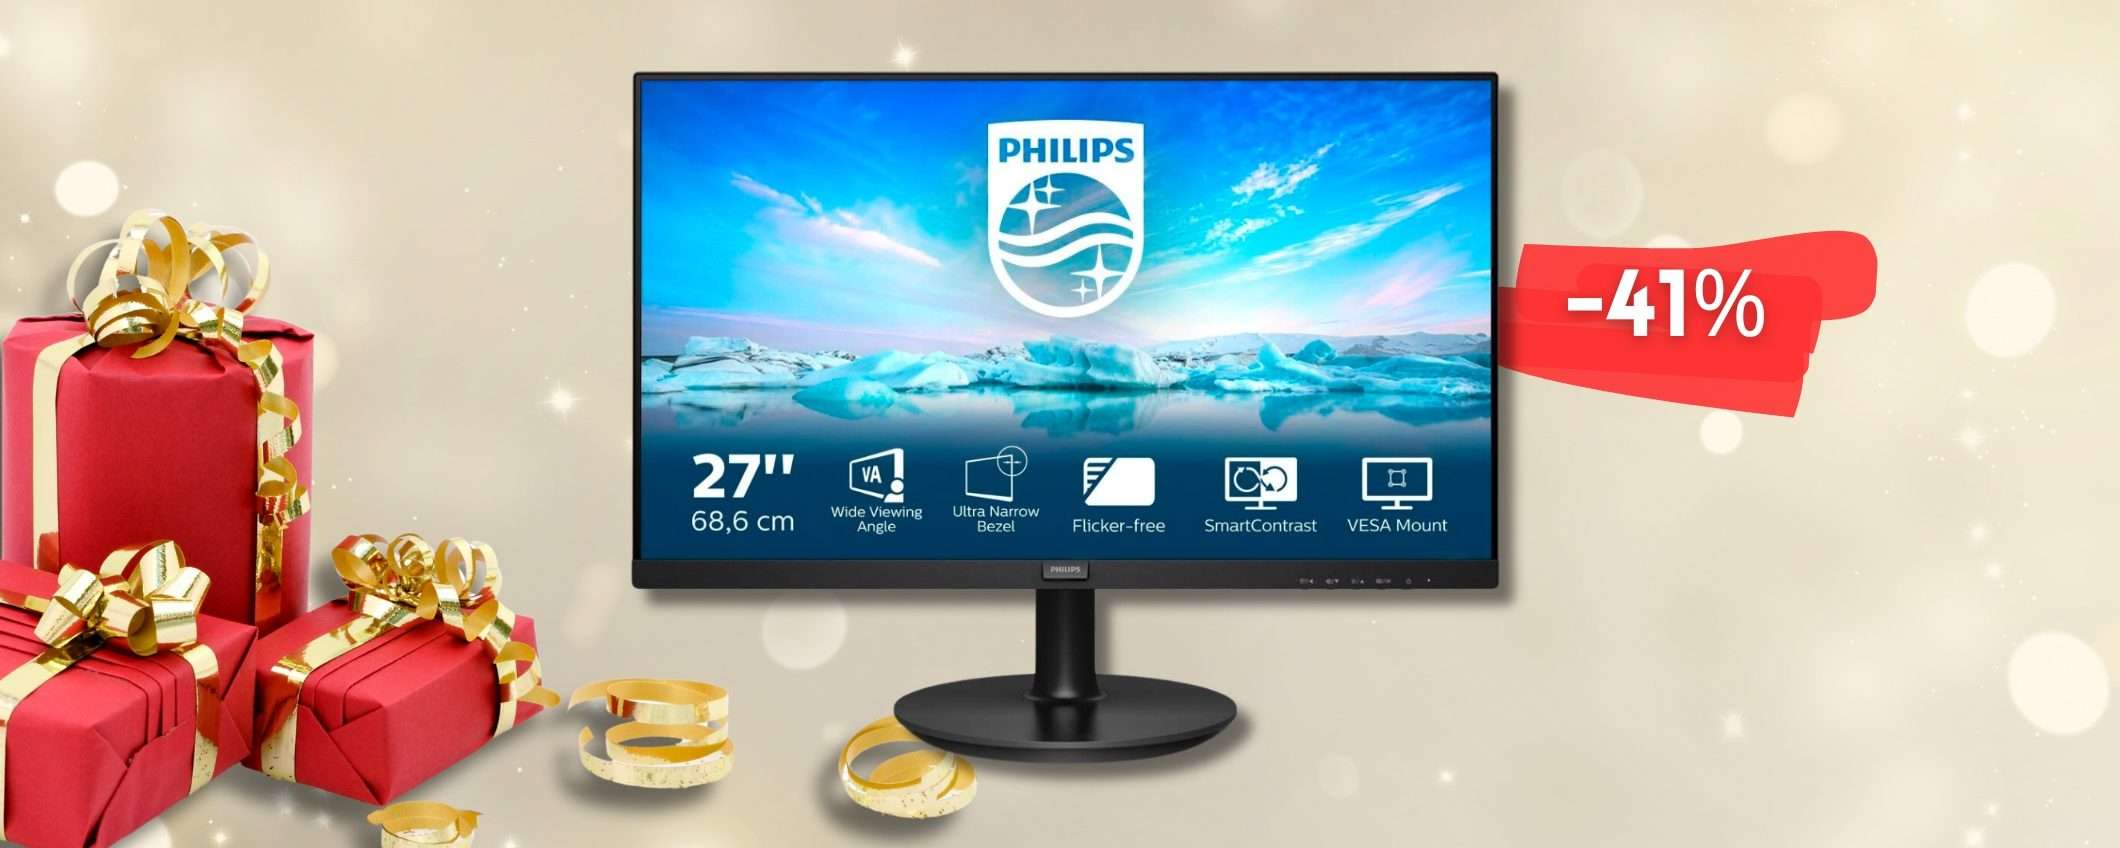 Monitor nuovo? Philips DISTRUGGE il prezzo del 27